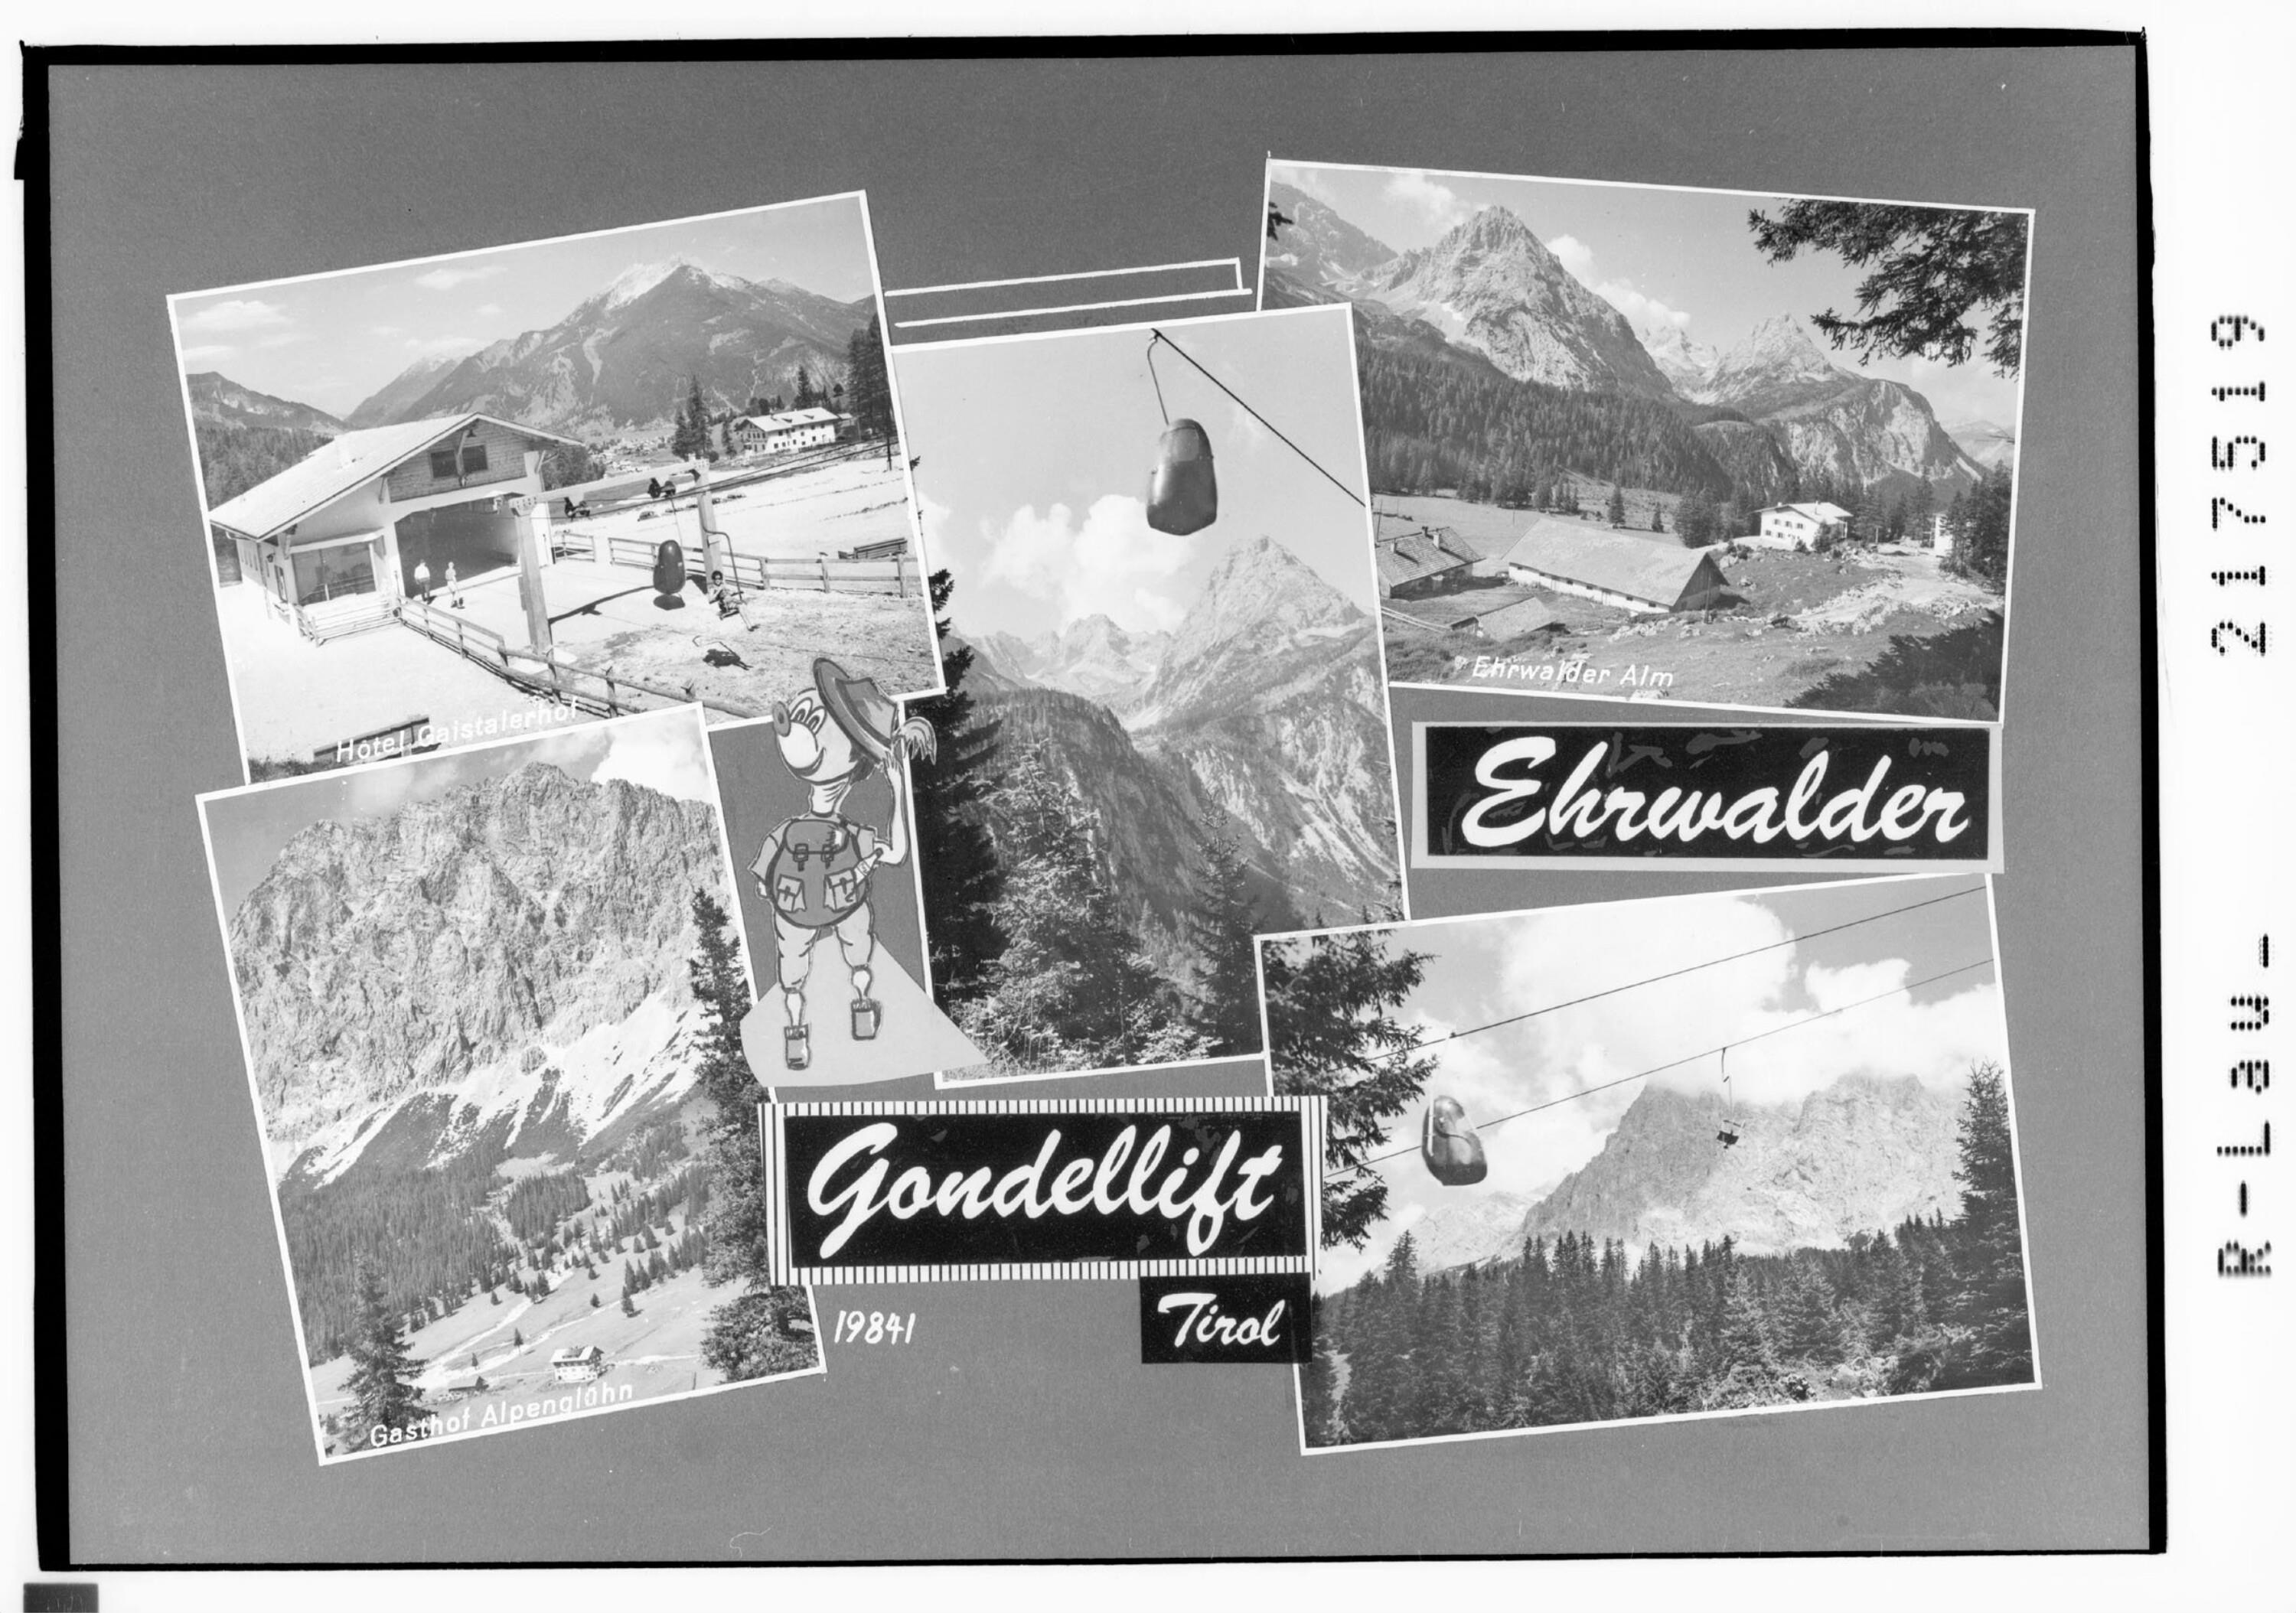 Ehrwalder Gondellift / Tirol></div>


    <hr>
    <div class=